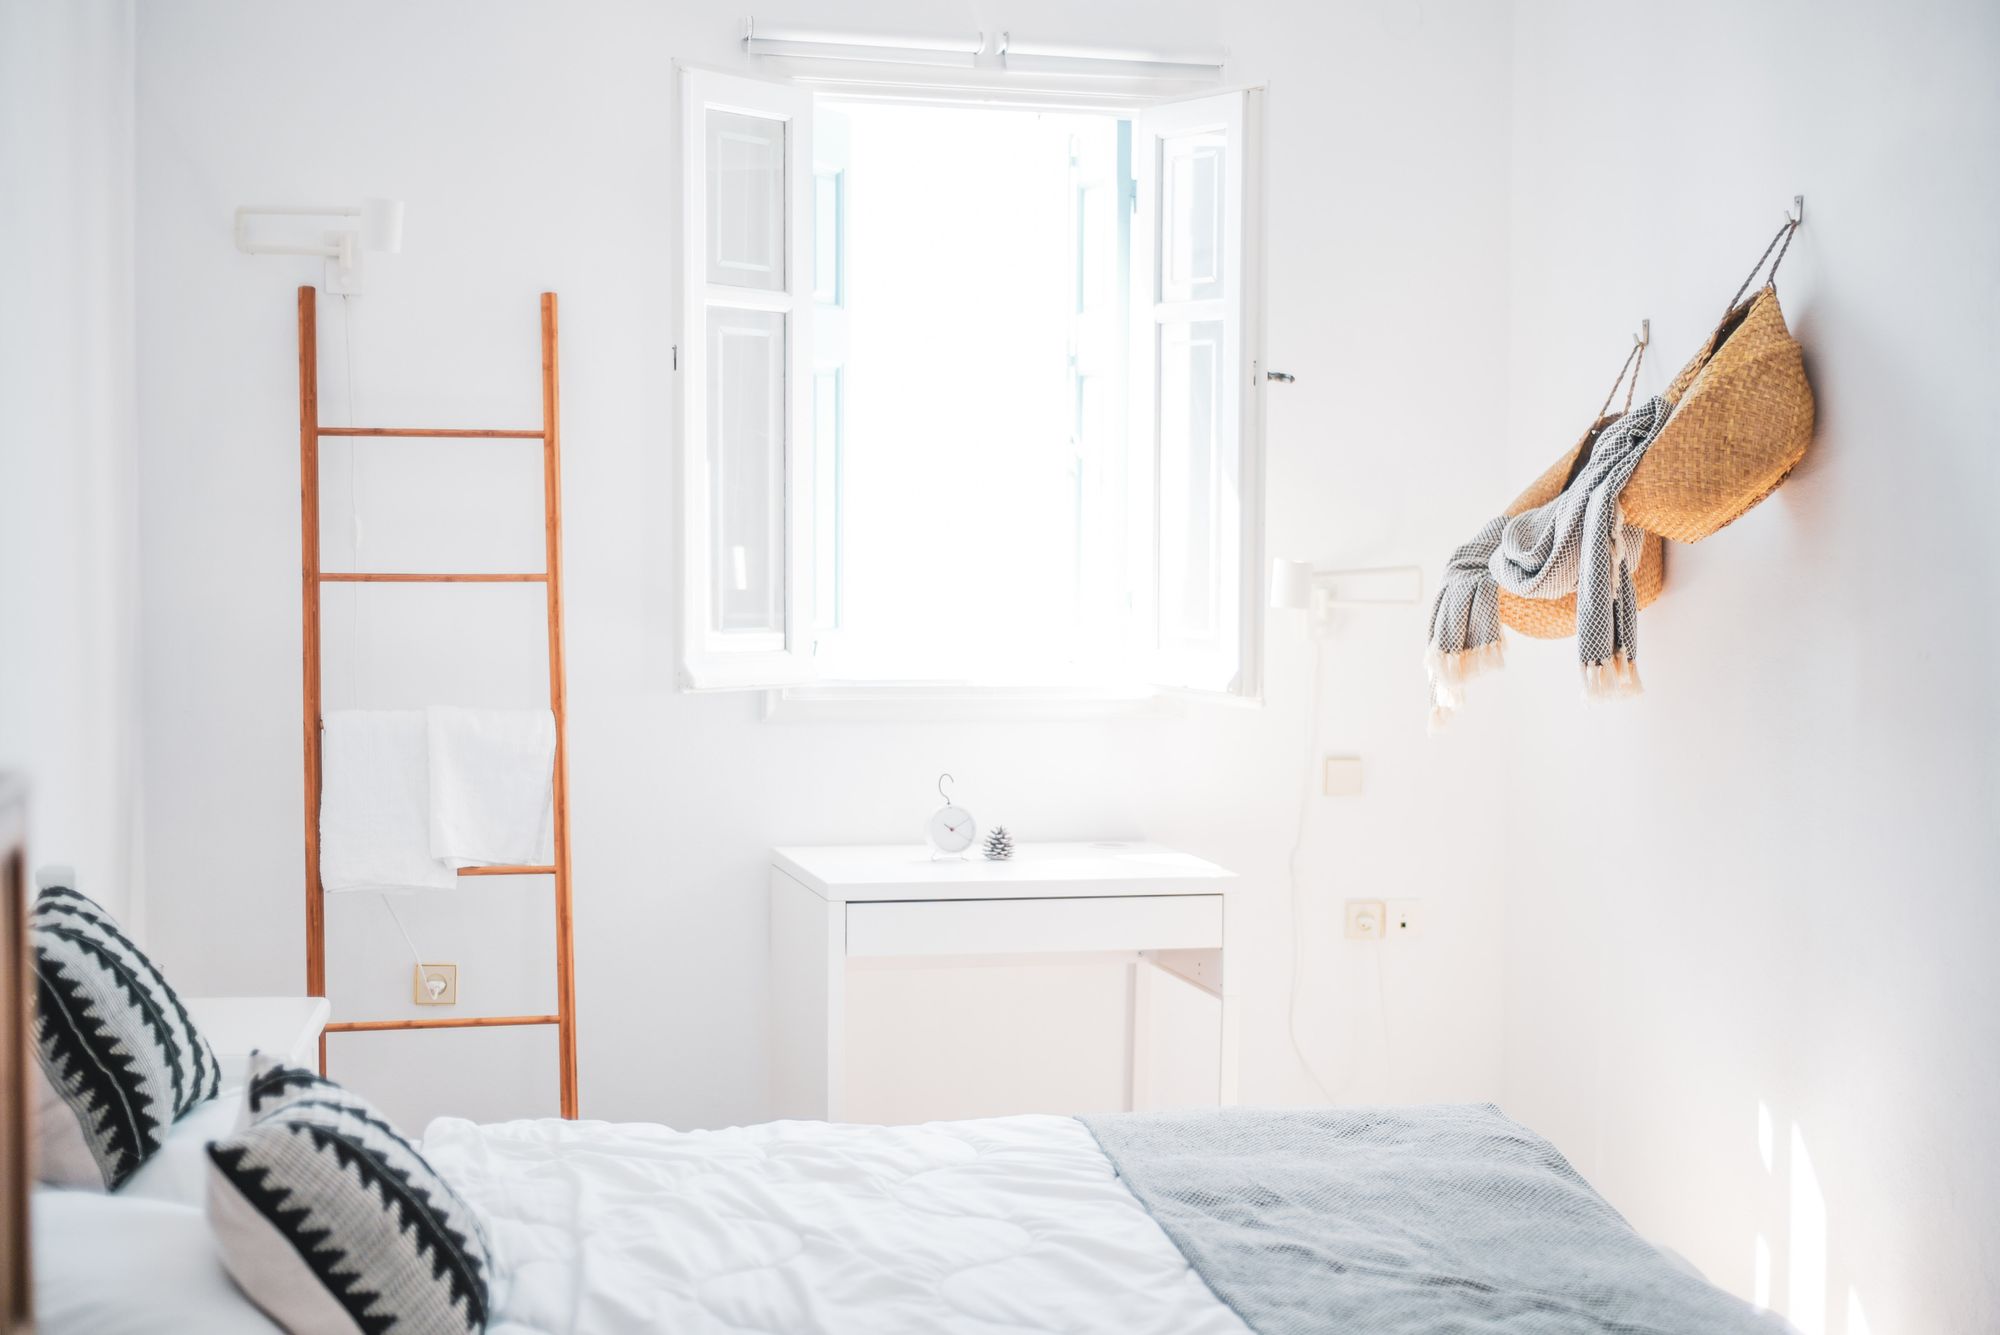 Diseño de habitaciones juveniles, dormitorio luminoso con cama cómoda